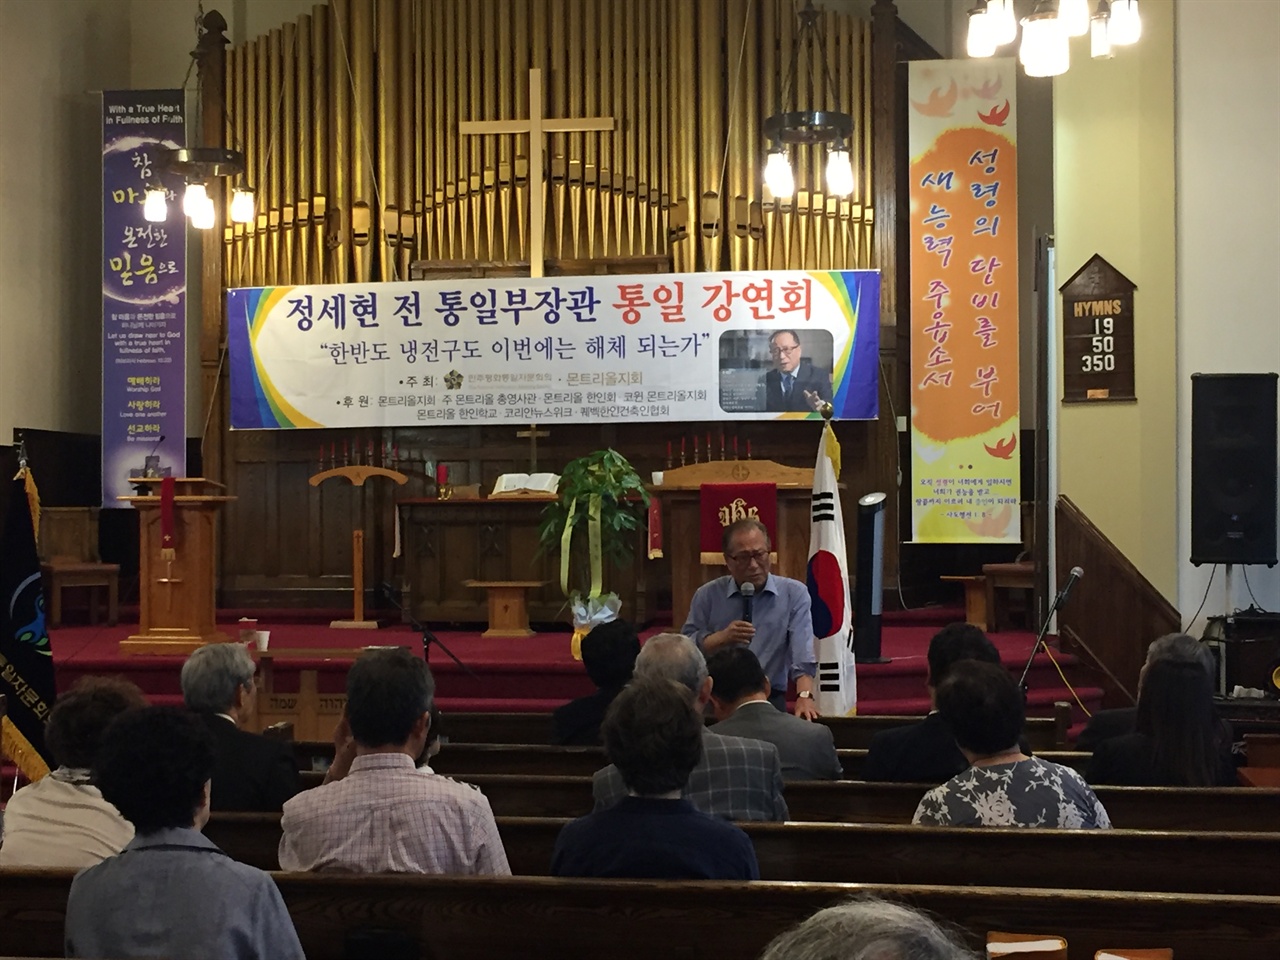  지난 6월 30일 캐나다 몬트리올 한인연합교회에서 개최된 정세현 전 장관의 통일 강연회. 